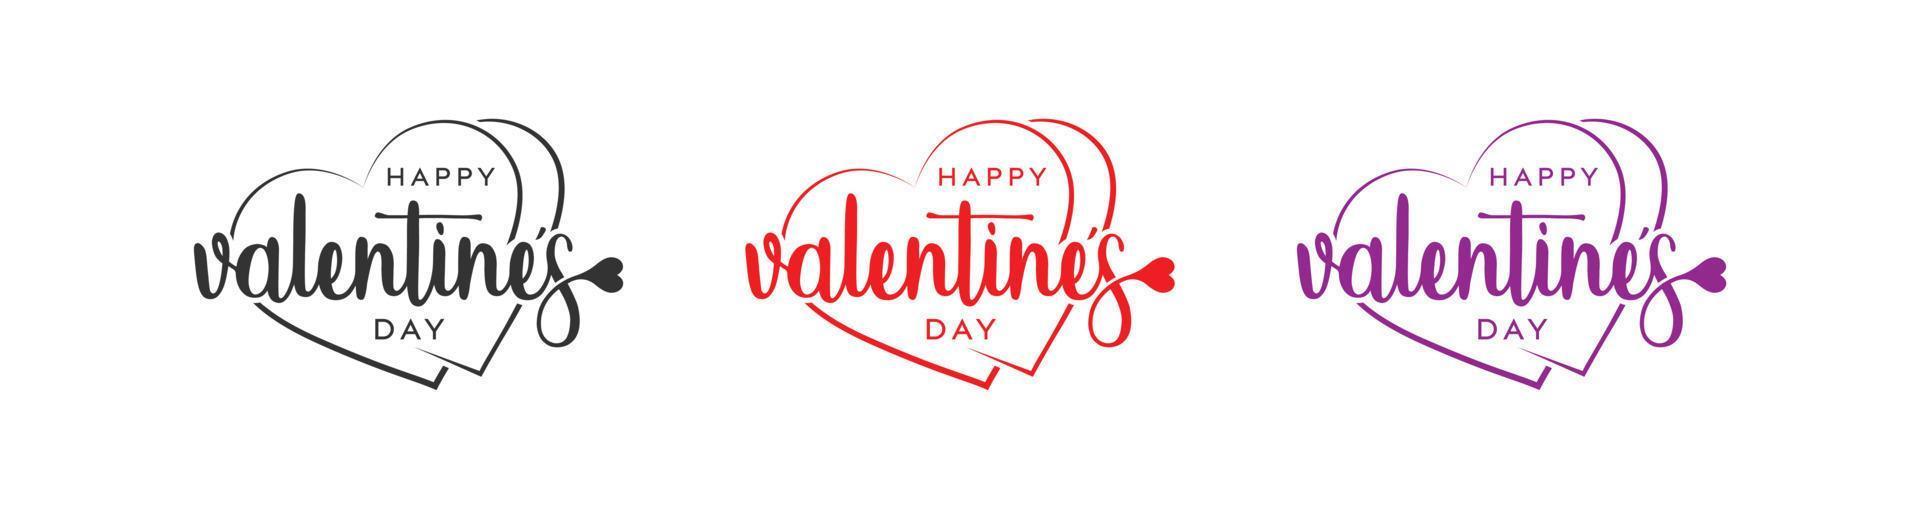 Me encanta el logotipo del día de San Valentín feliz, San Valentín feliz con caja de amor, diseño del logotipo del vector de amor.